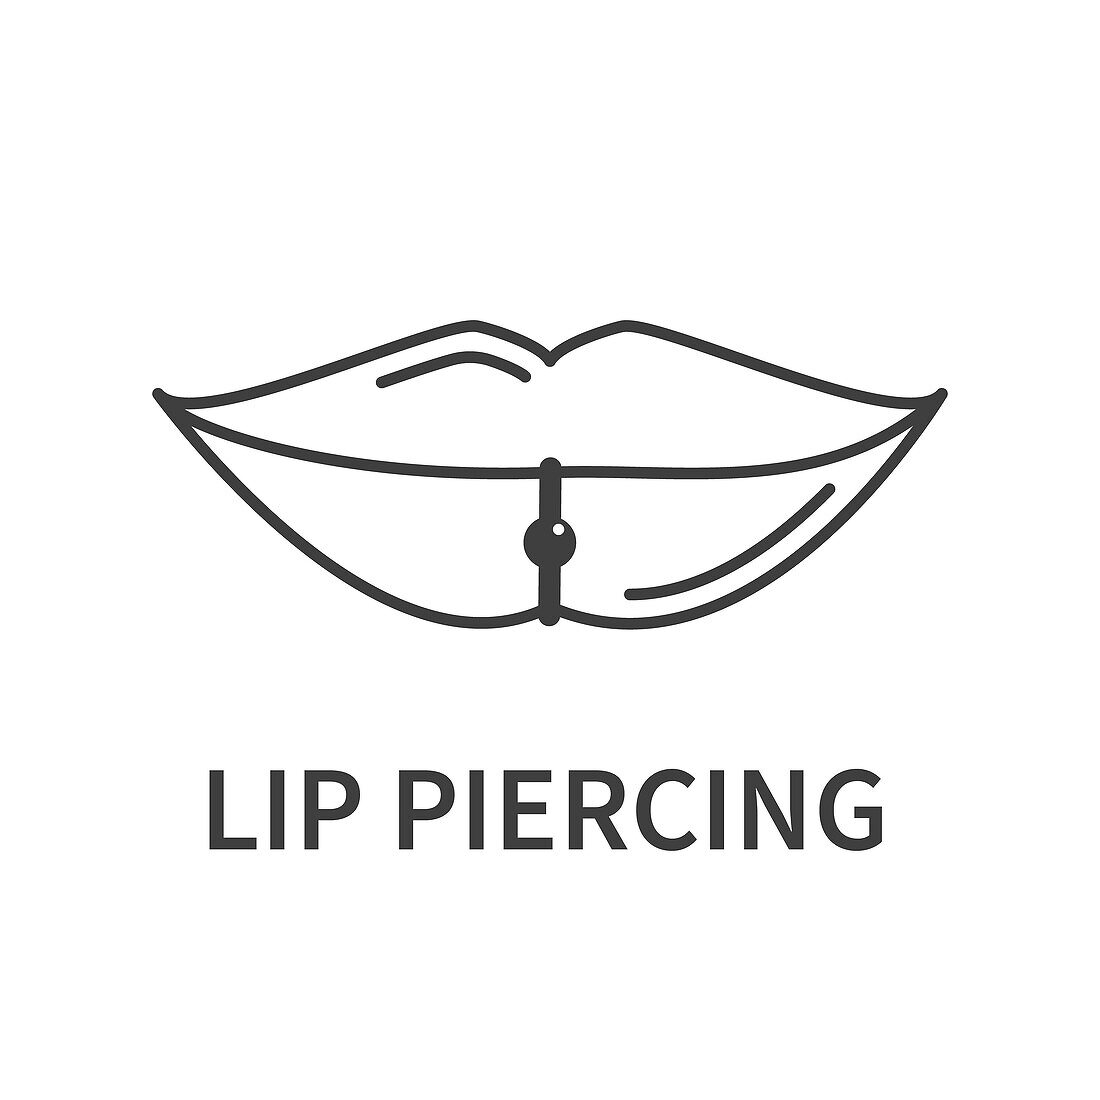 Lip piercing, illustration